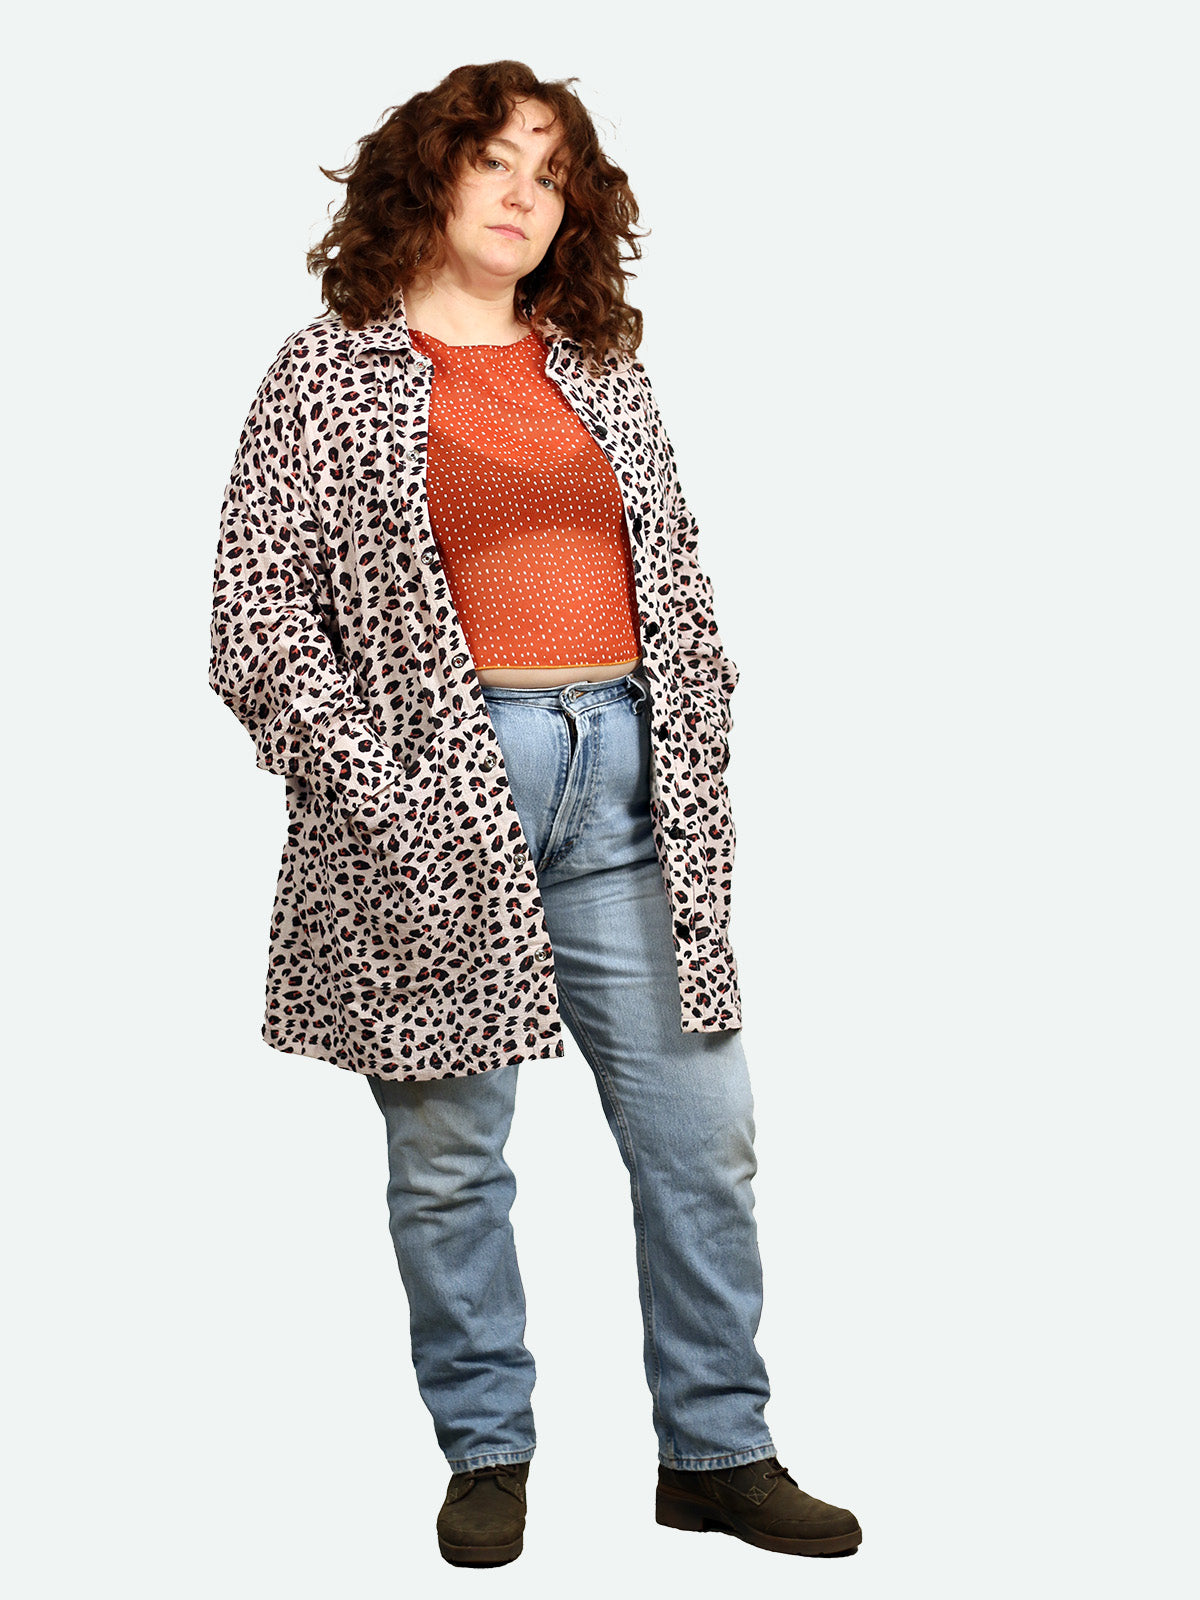 Ret Shacket  / Shirt Dress in Leopard Print Linen